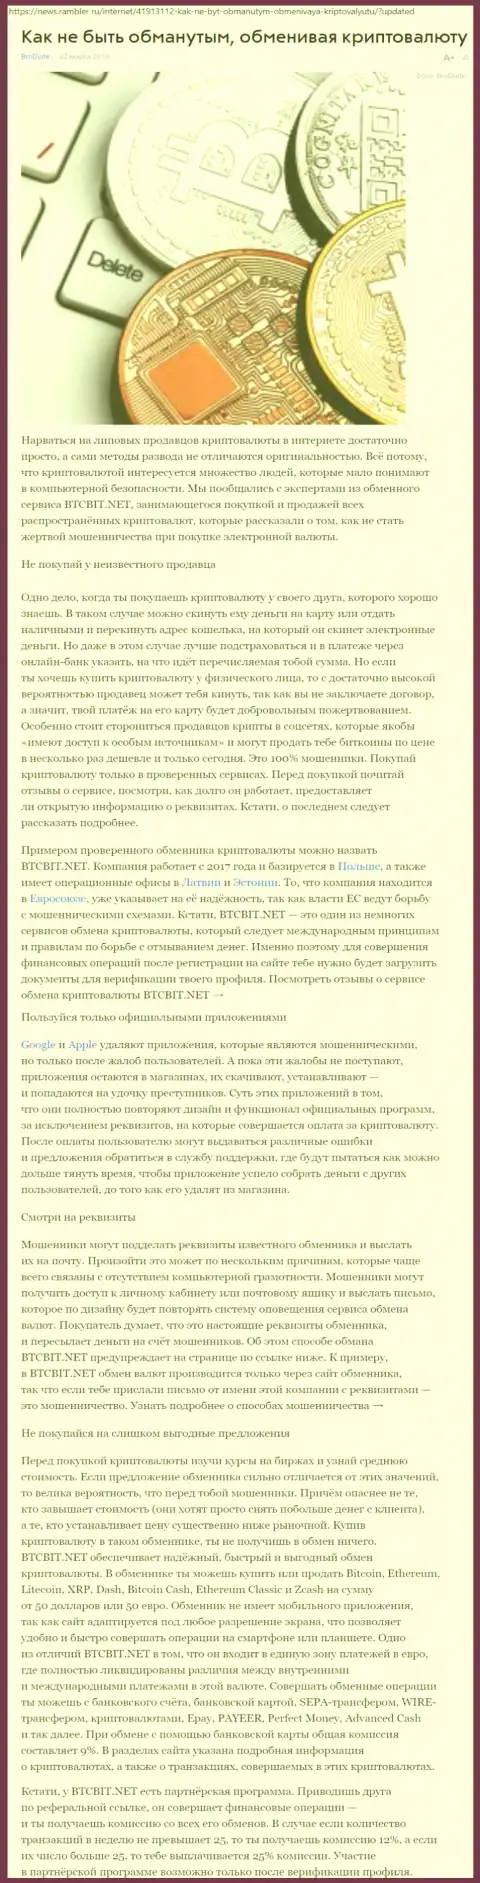 Статья об организации BTCBit на news rambler ru